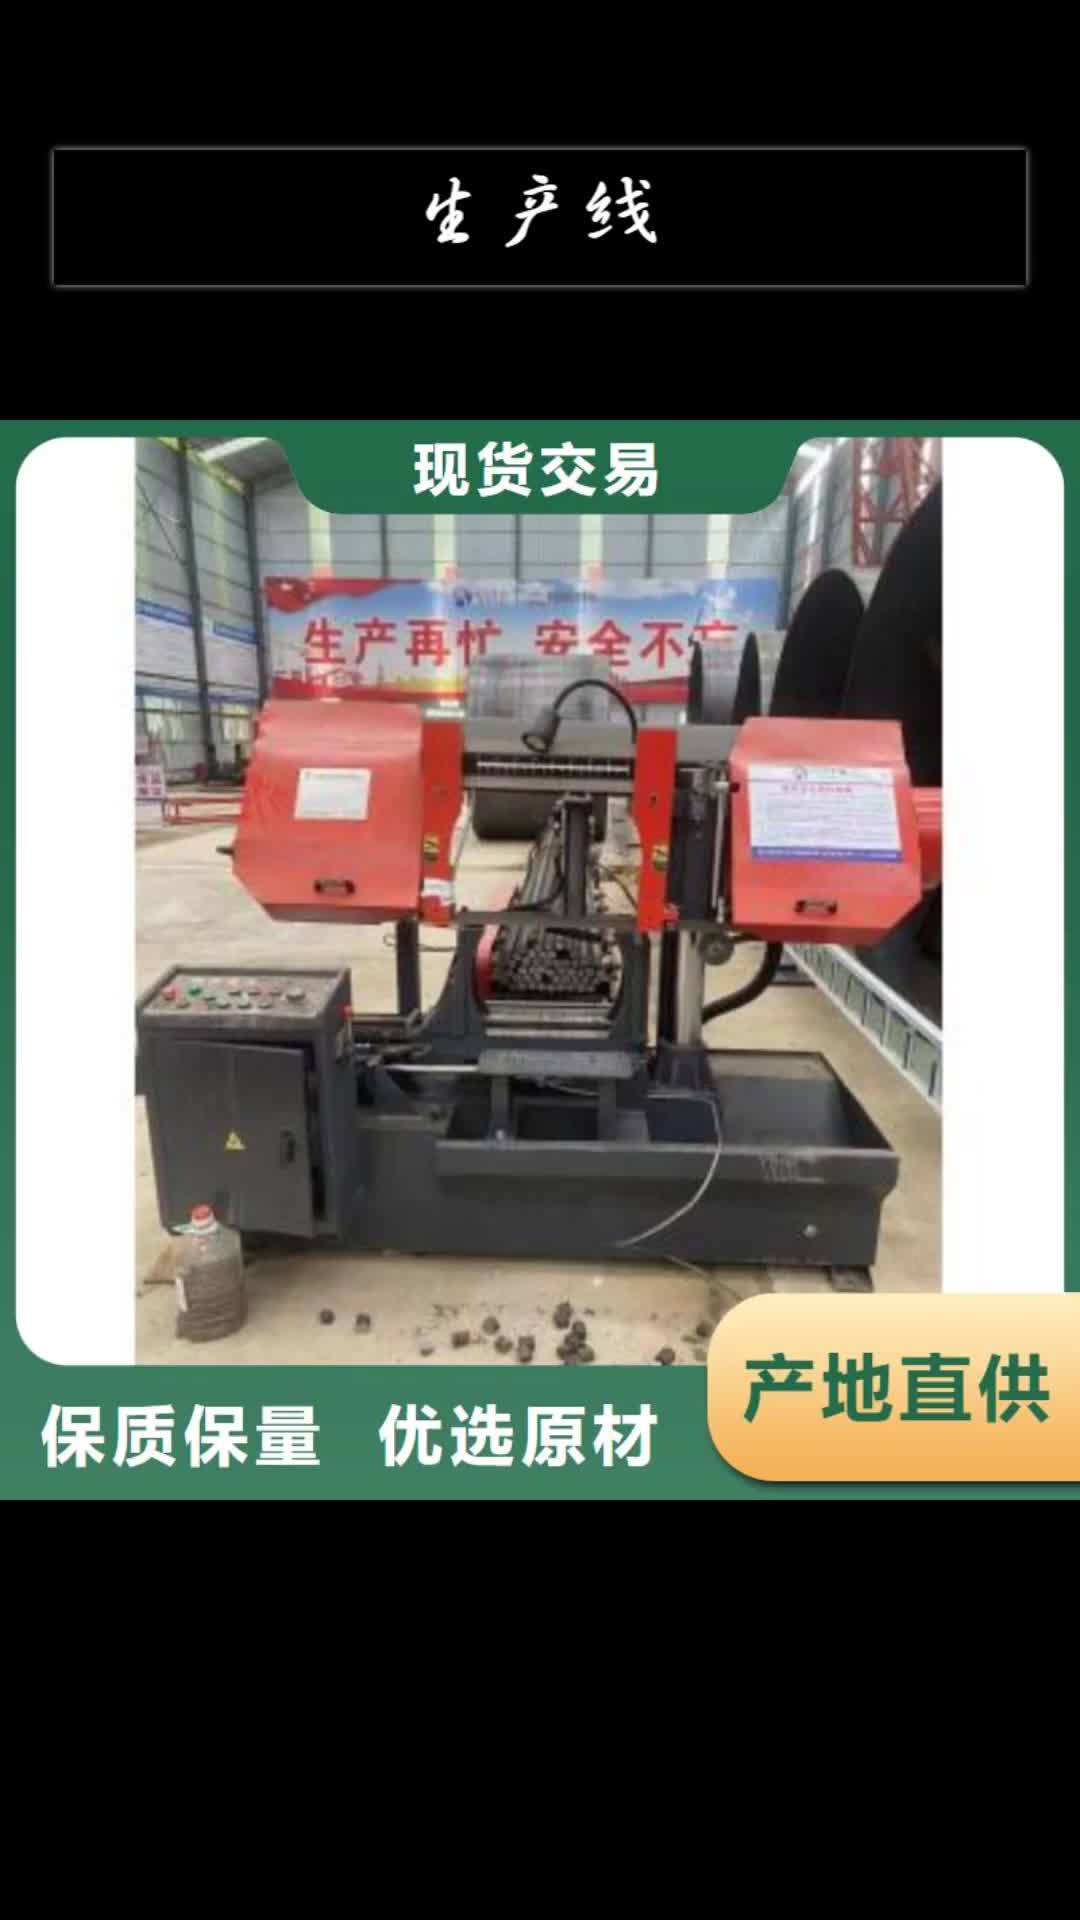 锦州生产线数控钢筋网排焊机多种规格供您选择